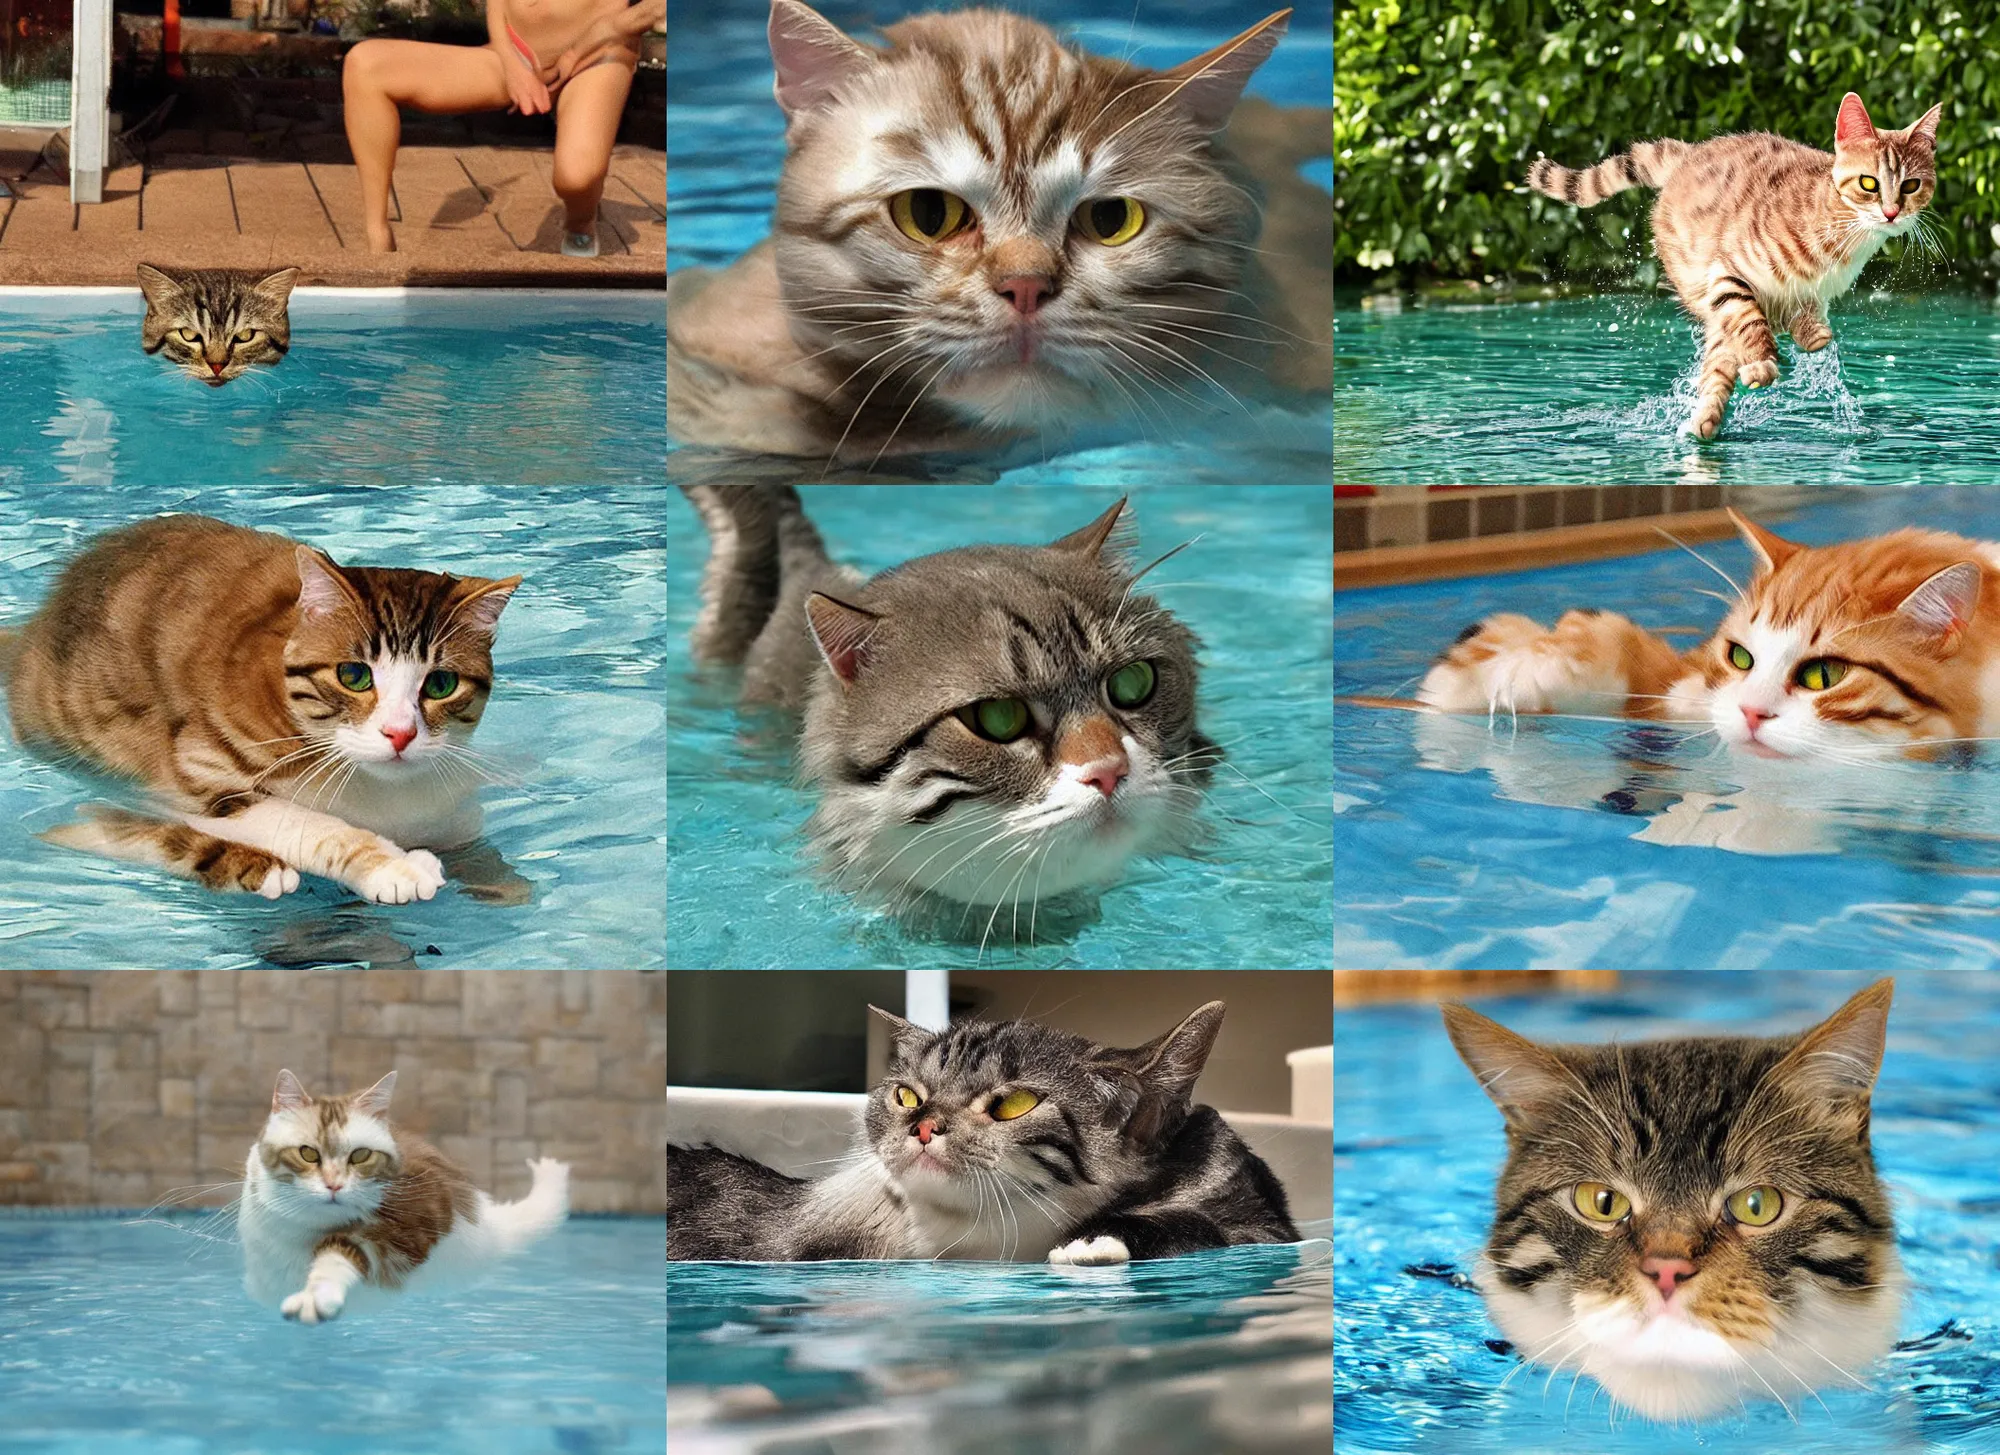 Prompt: swimming cat